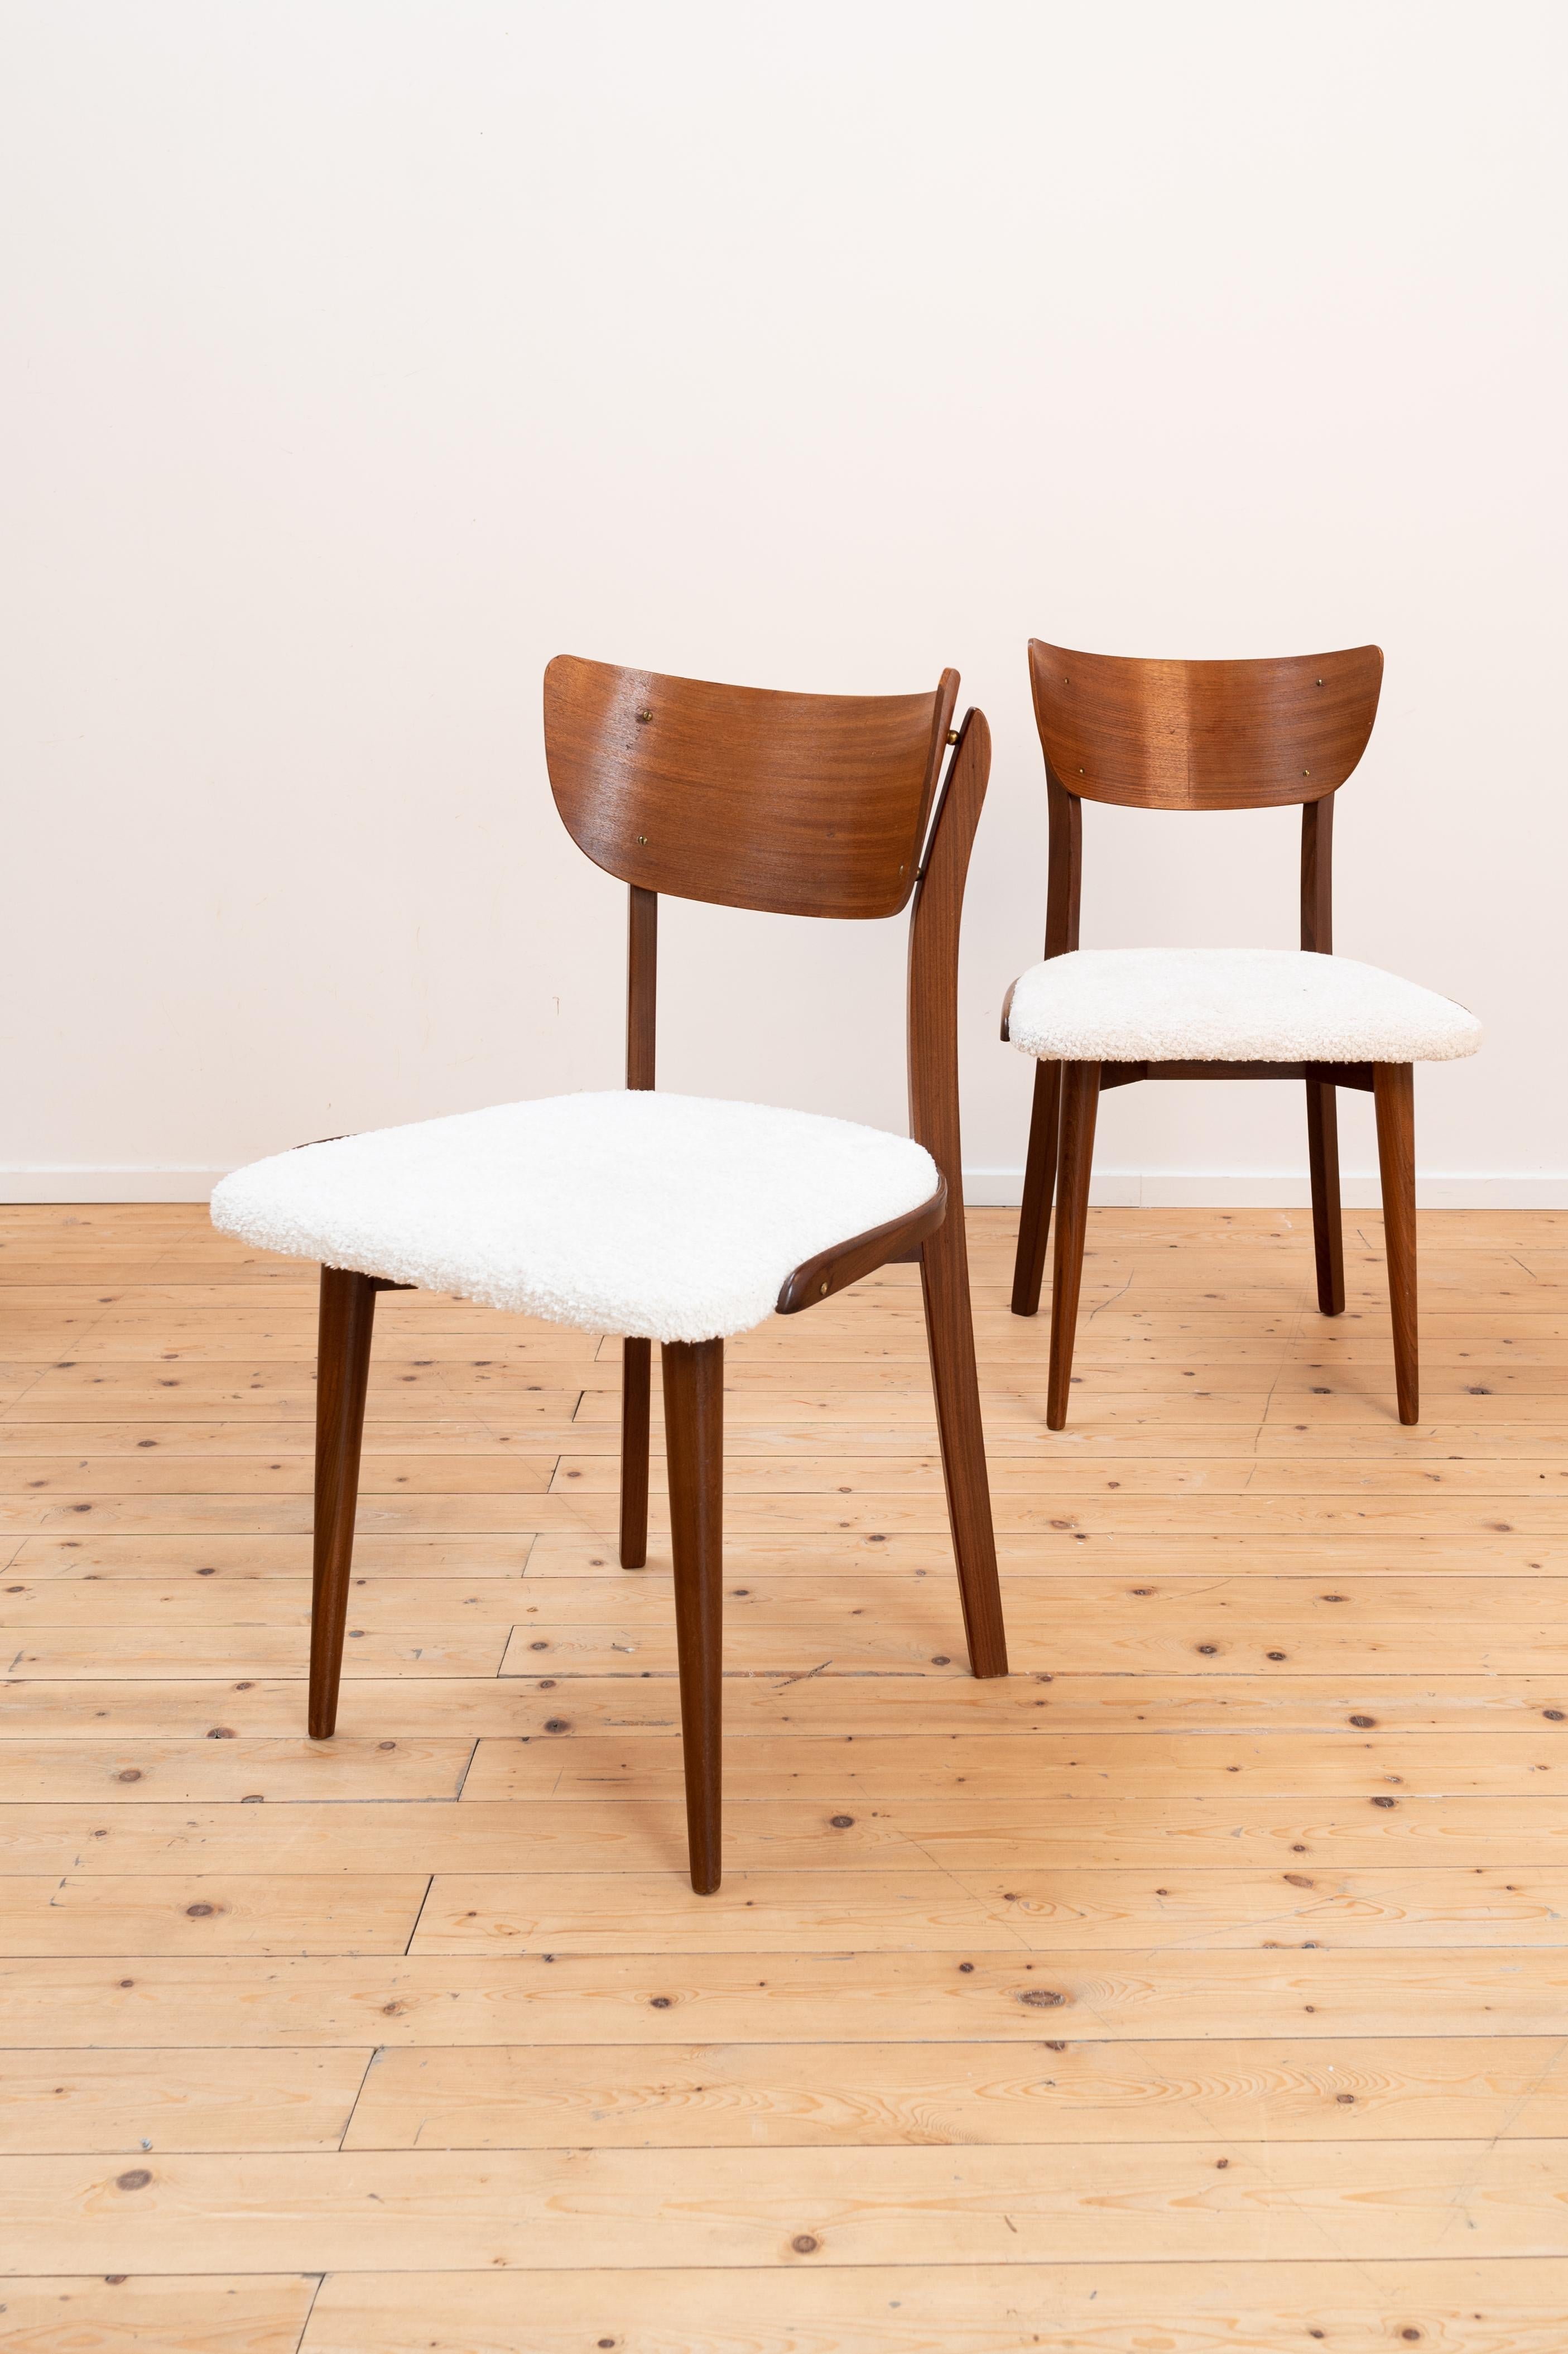 Elegante paire de chaises danoises (période et designer inconnus) avec un dossier magnifiquement formé. Le siège a été recouvert d'une nouvelle sellerie blanc cassé.